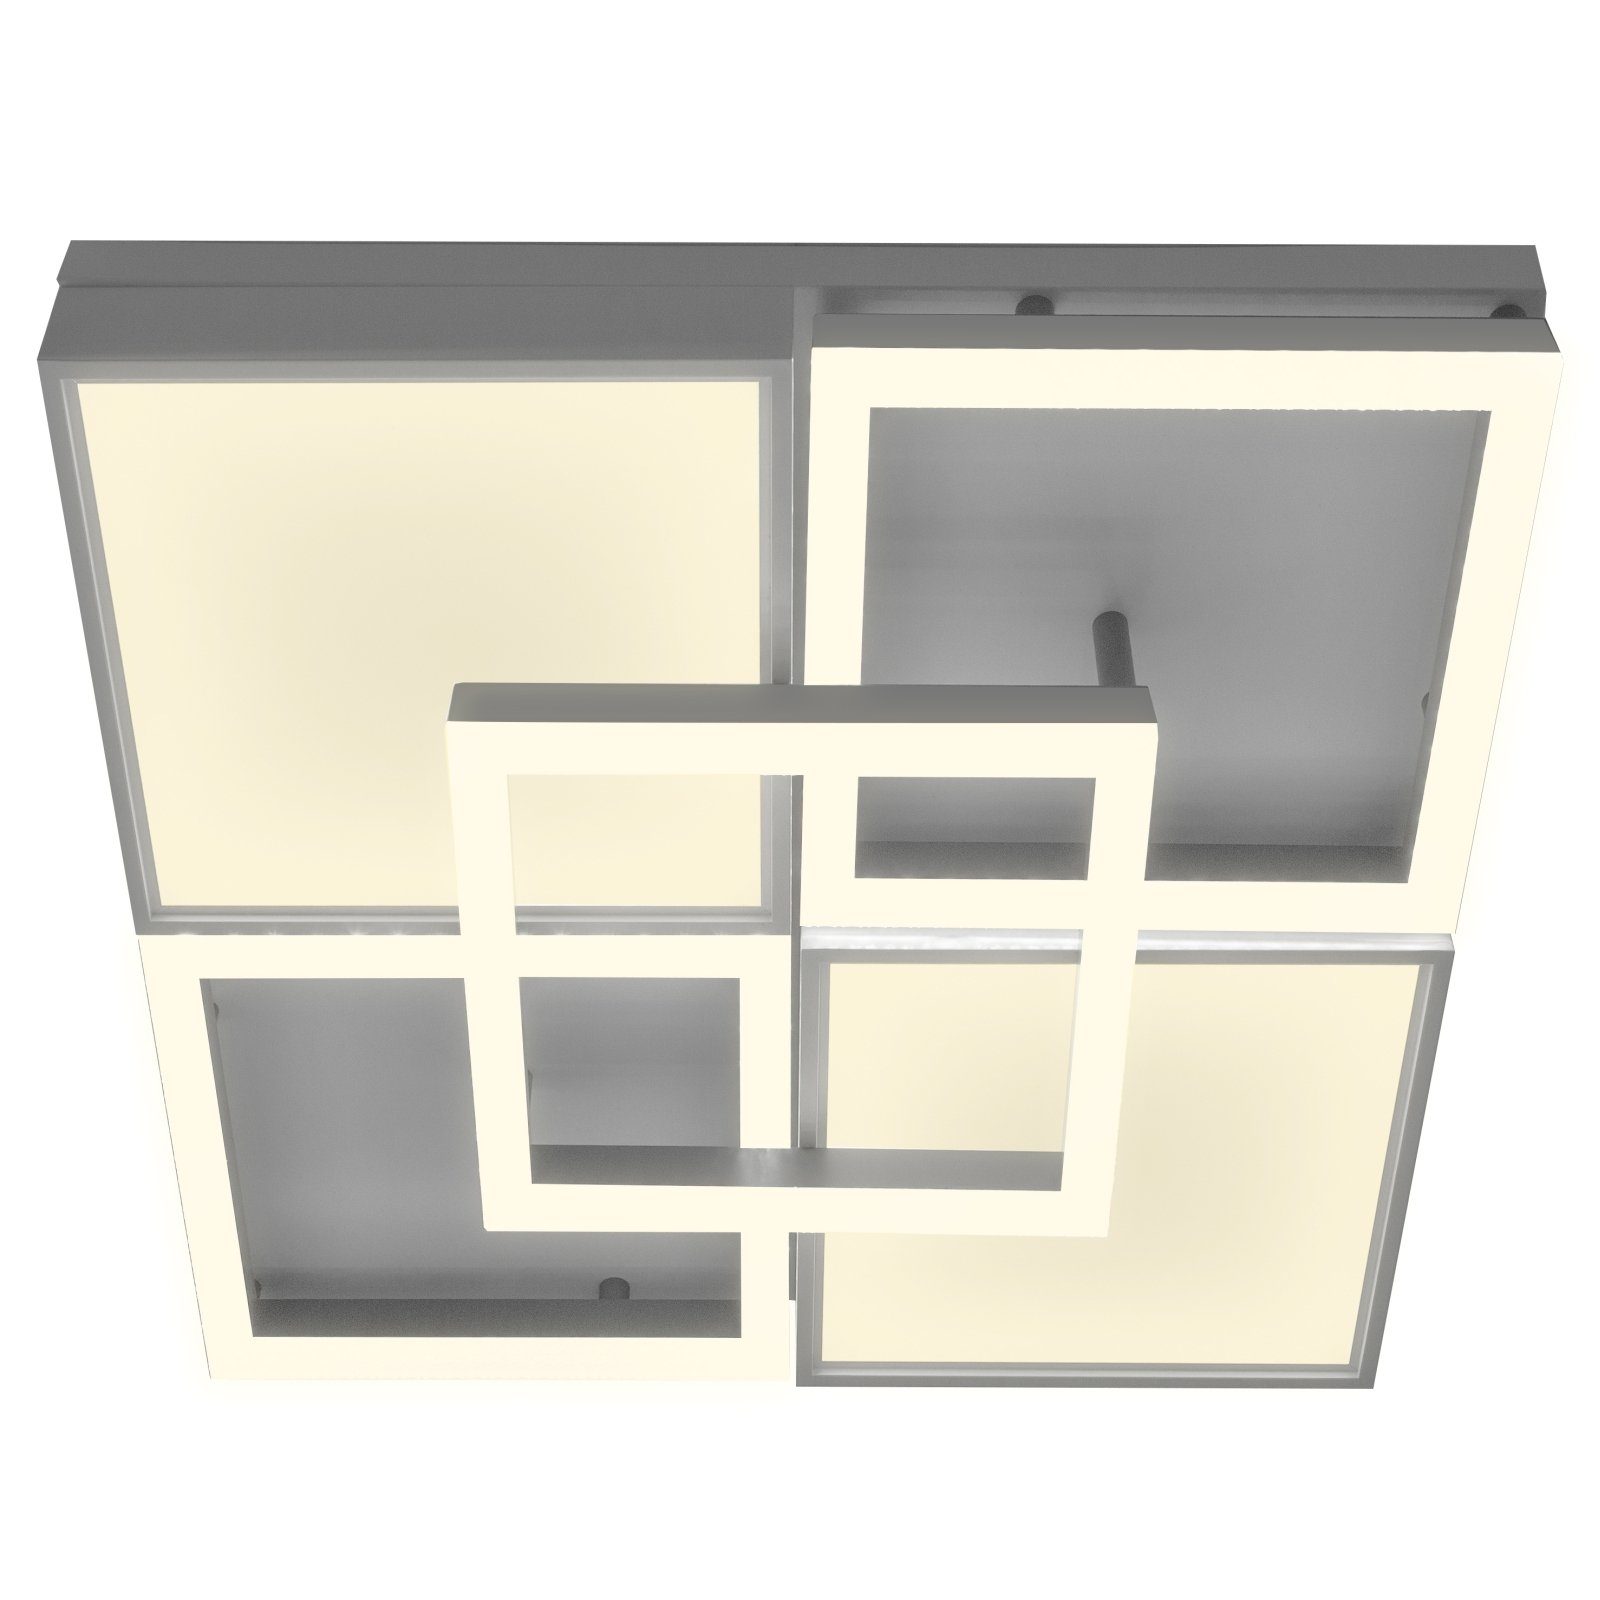 bmf-versand Deckenleuchte Nino Deckenleuchte Leuchten Quadrat Panel Wohnzimmer Deckenlampe LED